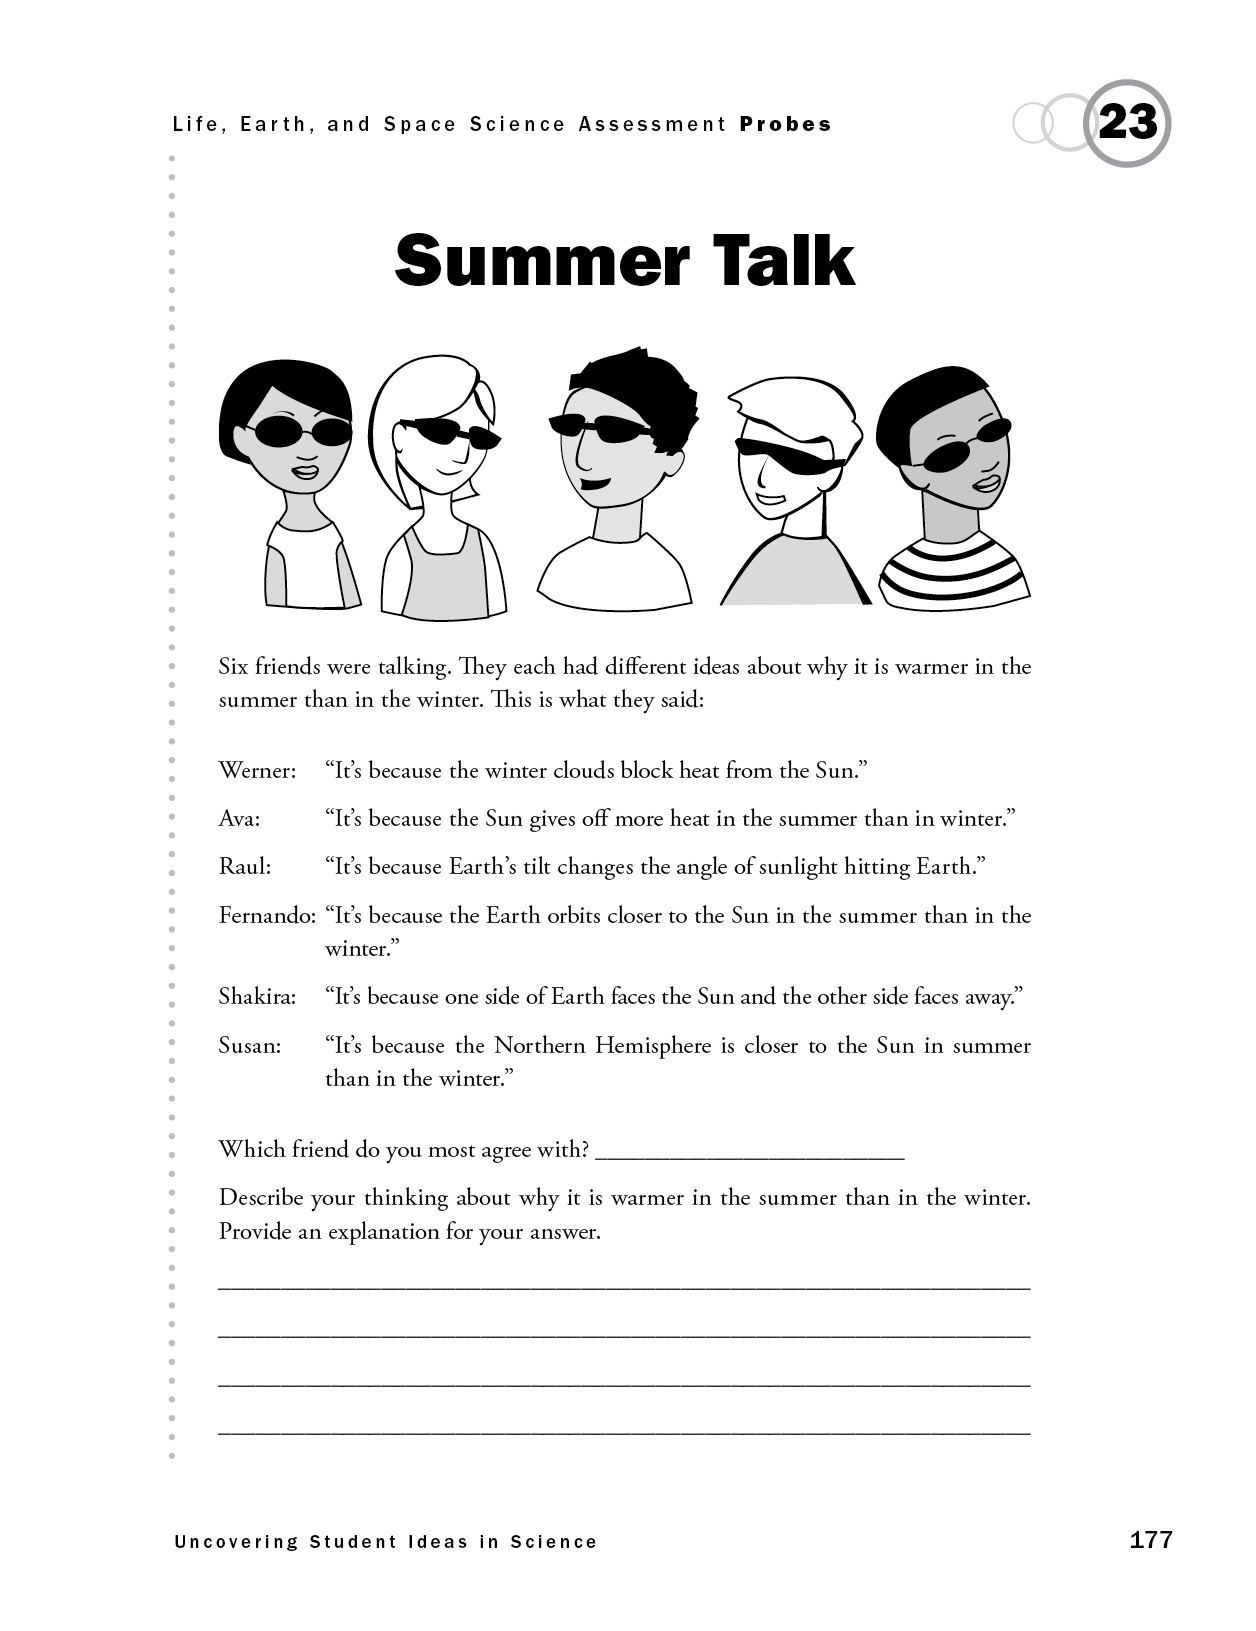 Summer Talk